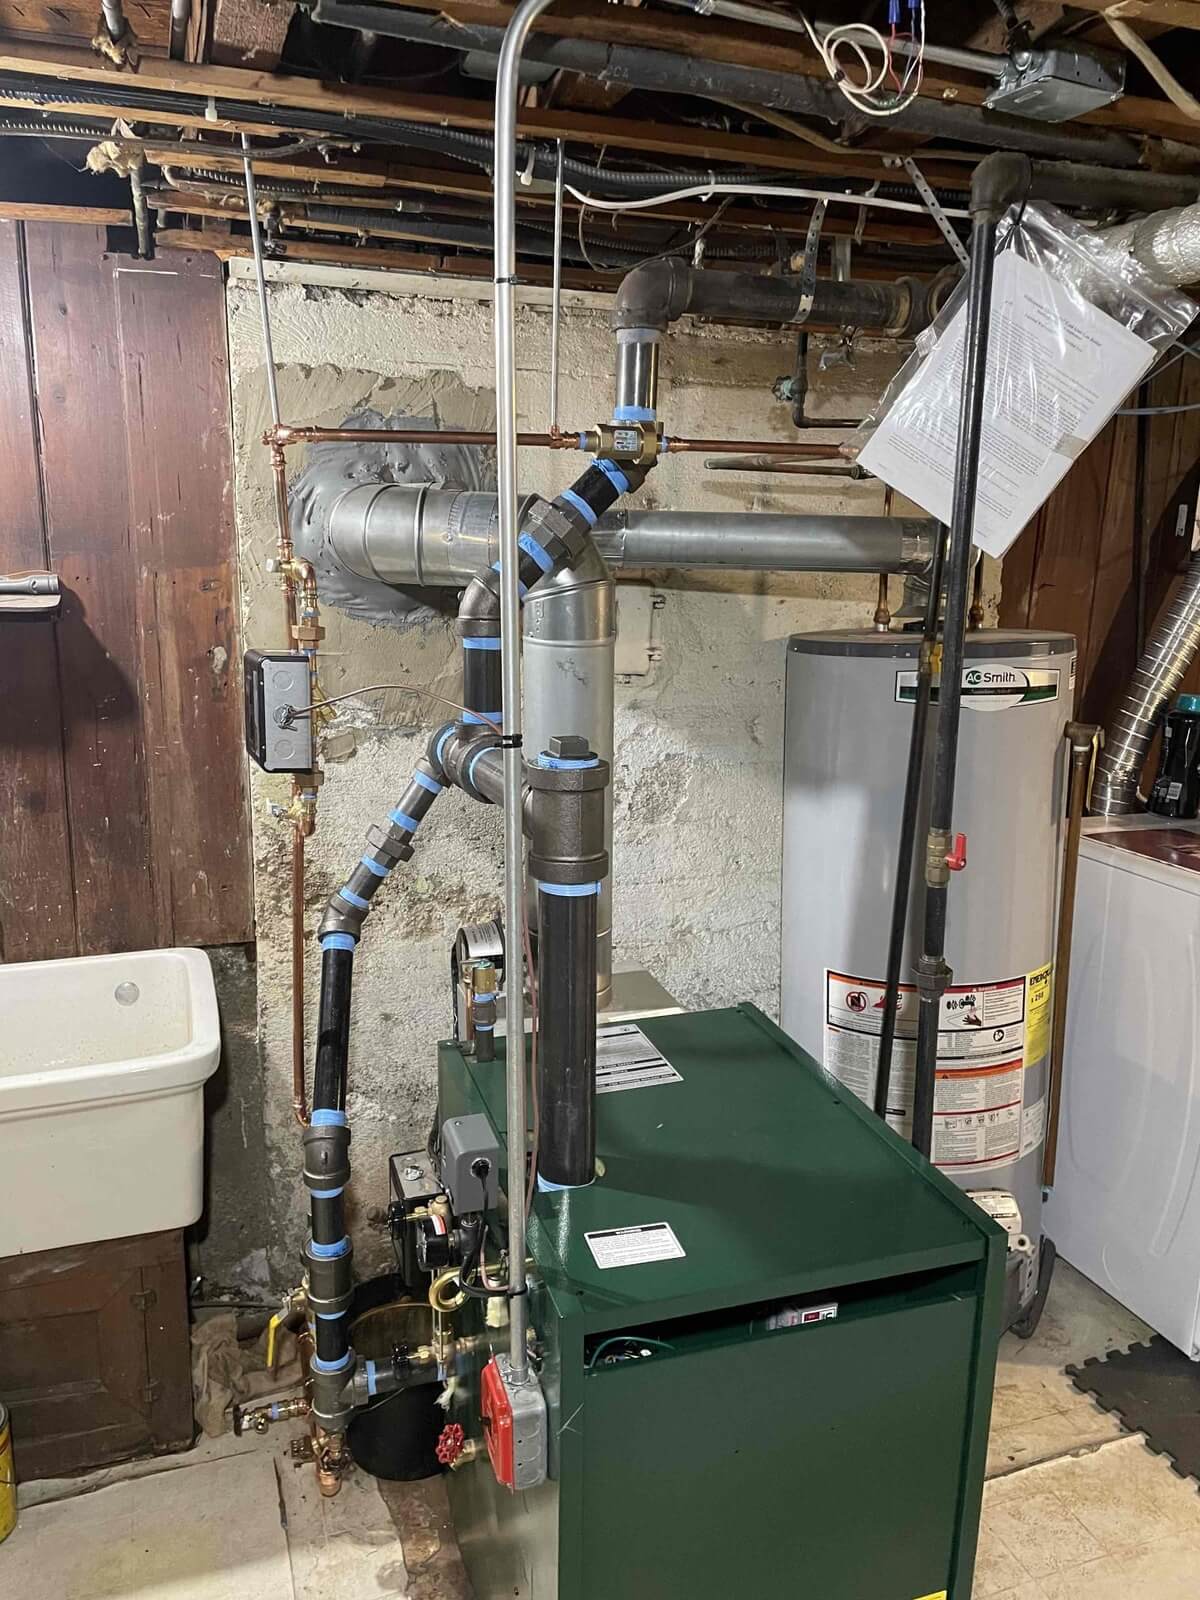 New steam boiler installed in basement